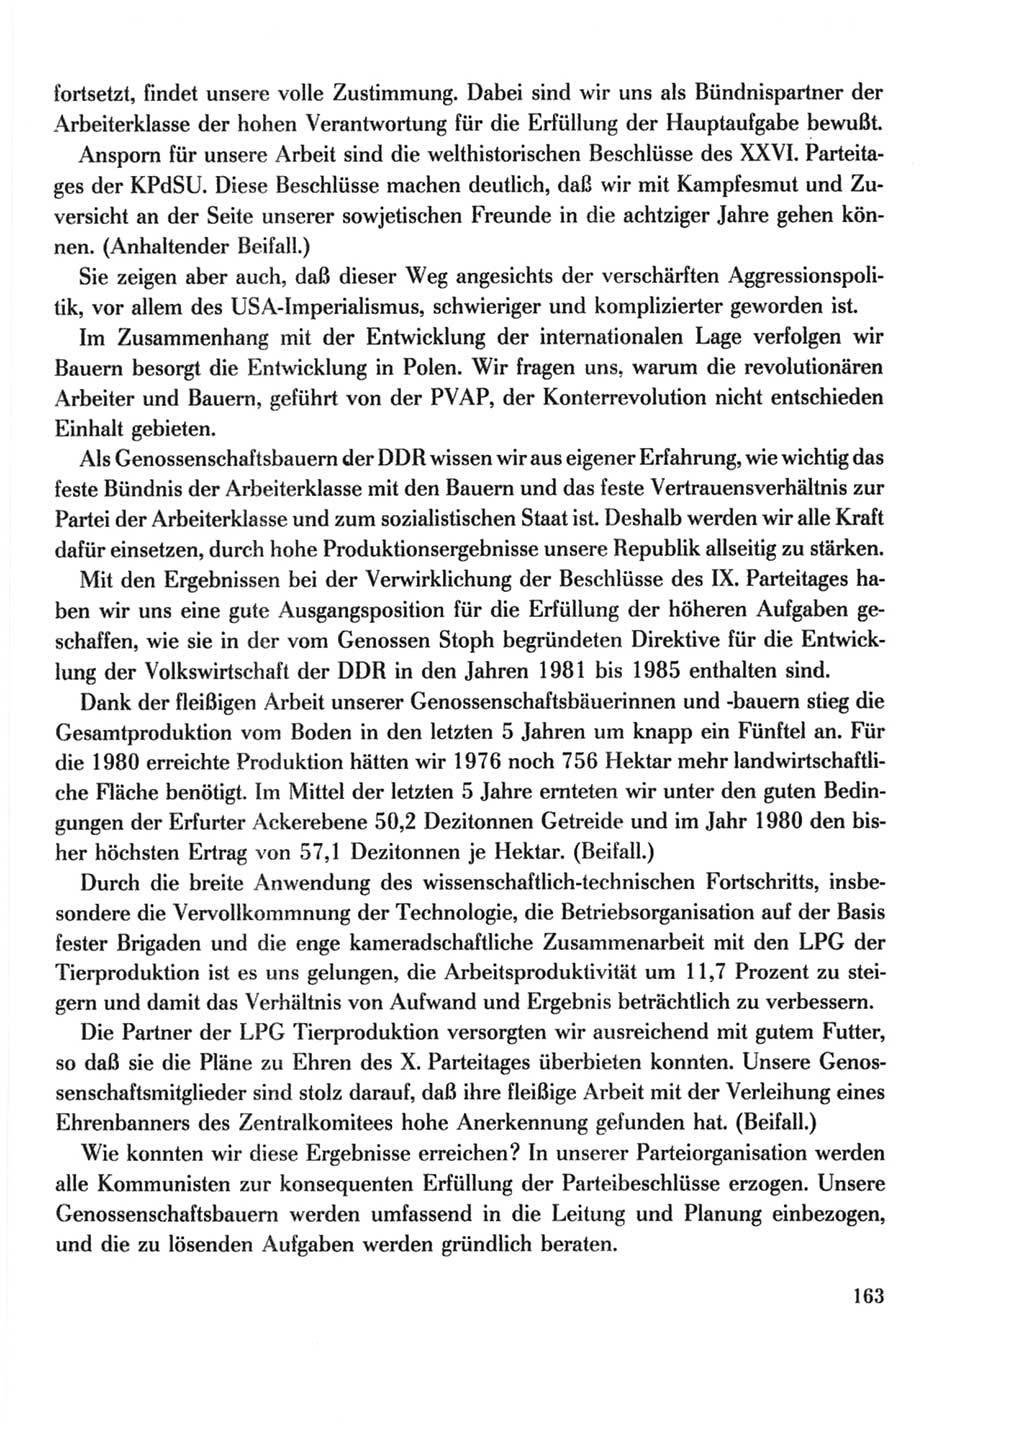 Protokoll der Verhandlungen des Ⅹ. Parteitages der Sozialistischen Einheitspartei Deutschlands (SED) [Deutsche Demokratische Republik (DDR)] 1981, Band 2, Seite 163 (Prot. Verh. Ⅹ. PT SED DDR 1981, Bd. 2, S. 163)